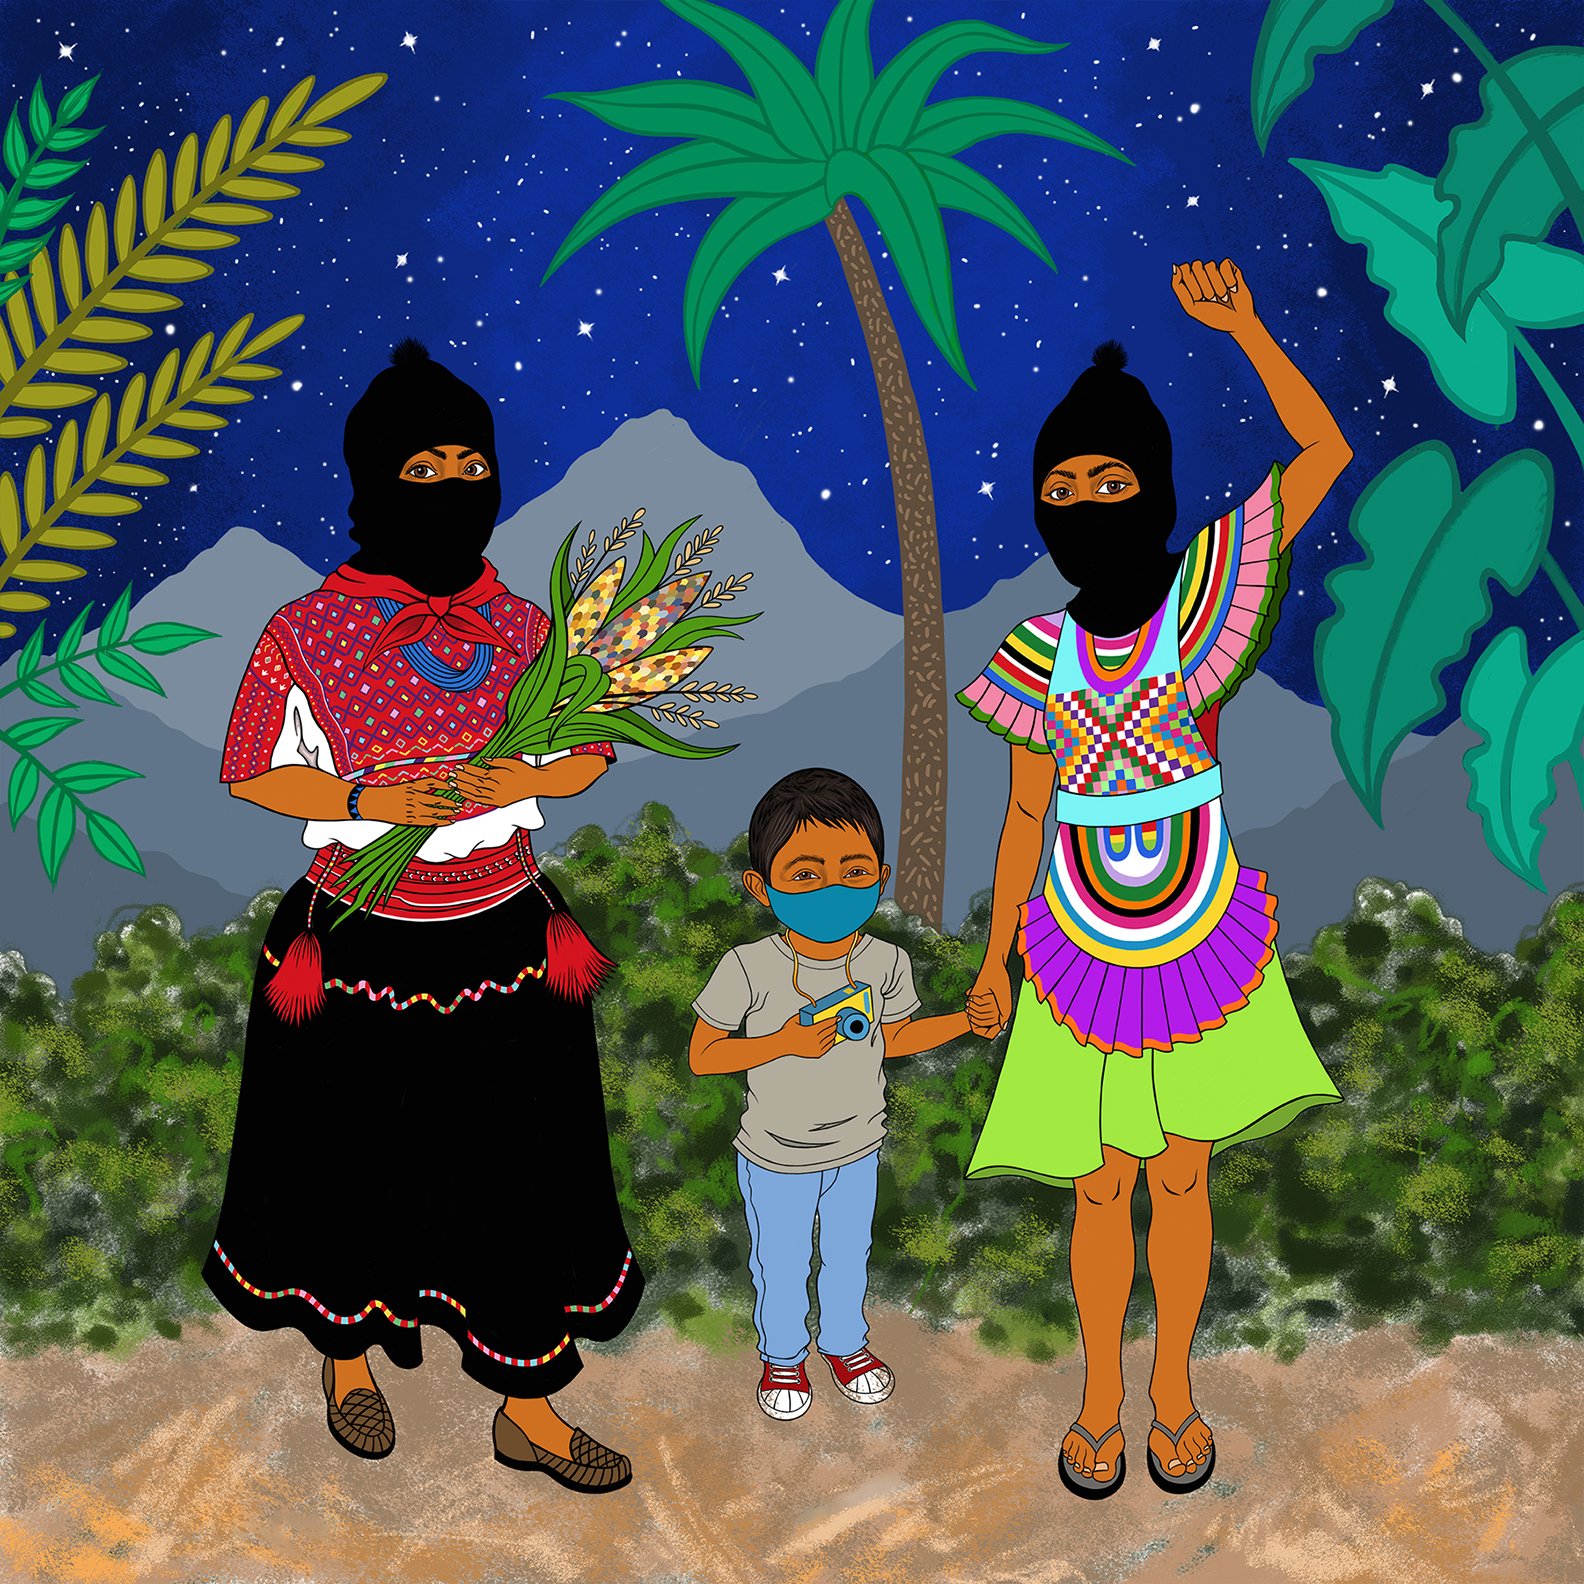 Zapatismos - Three generations